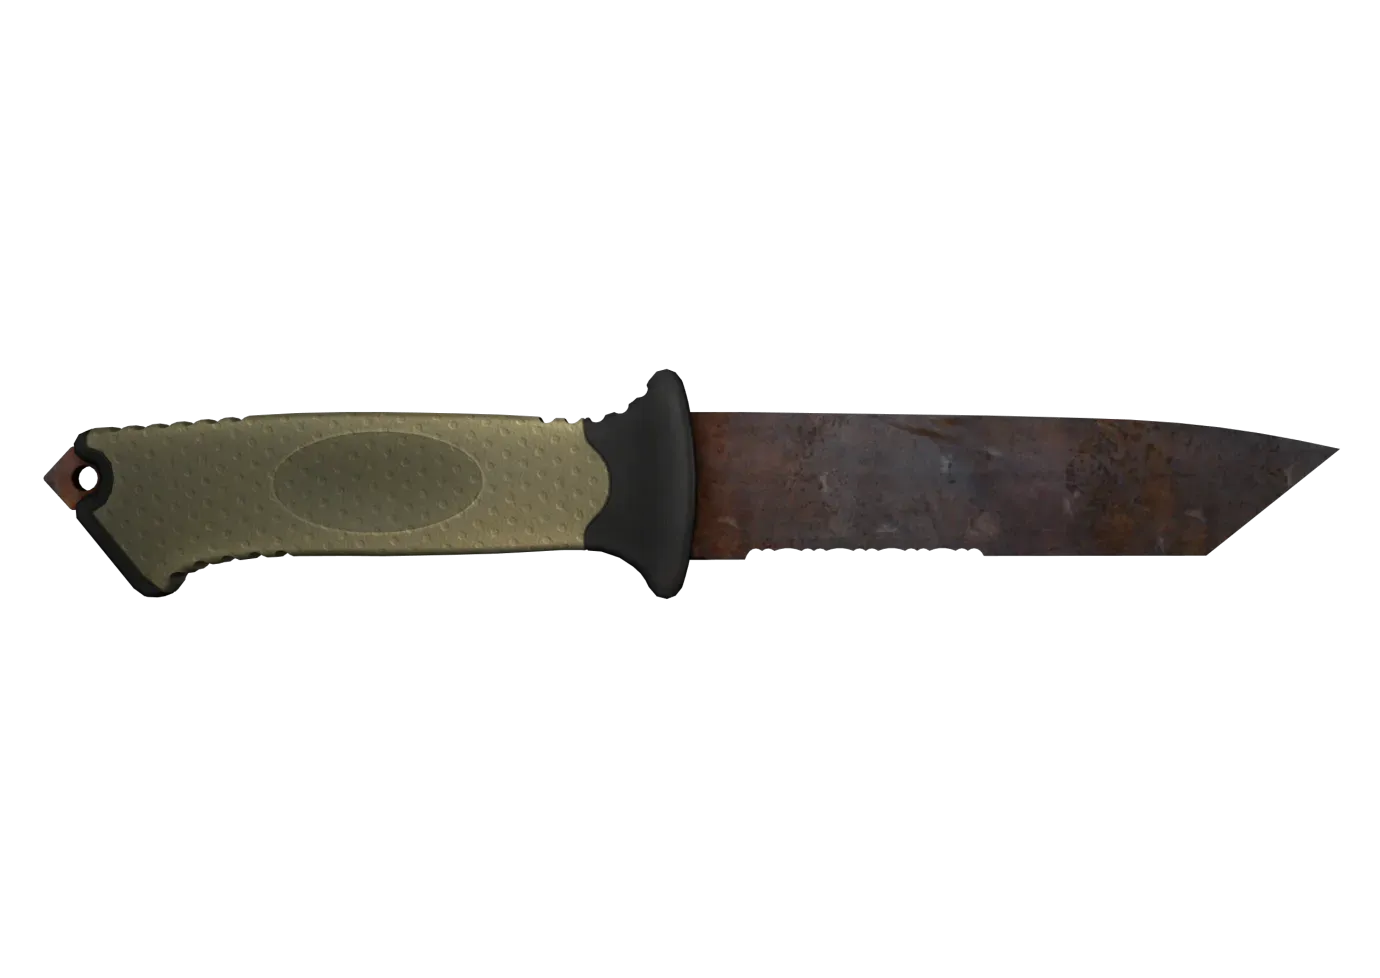 Ursus Knife